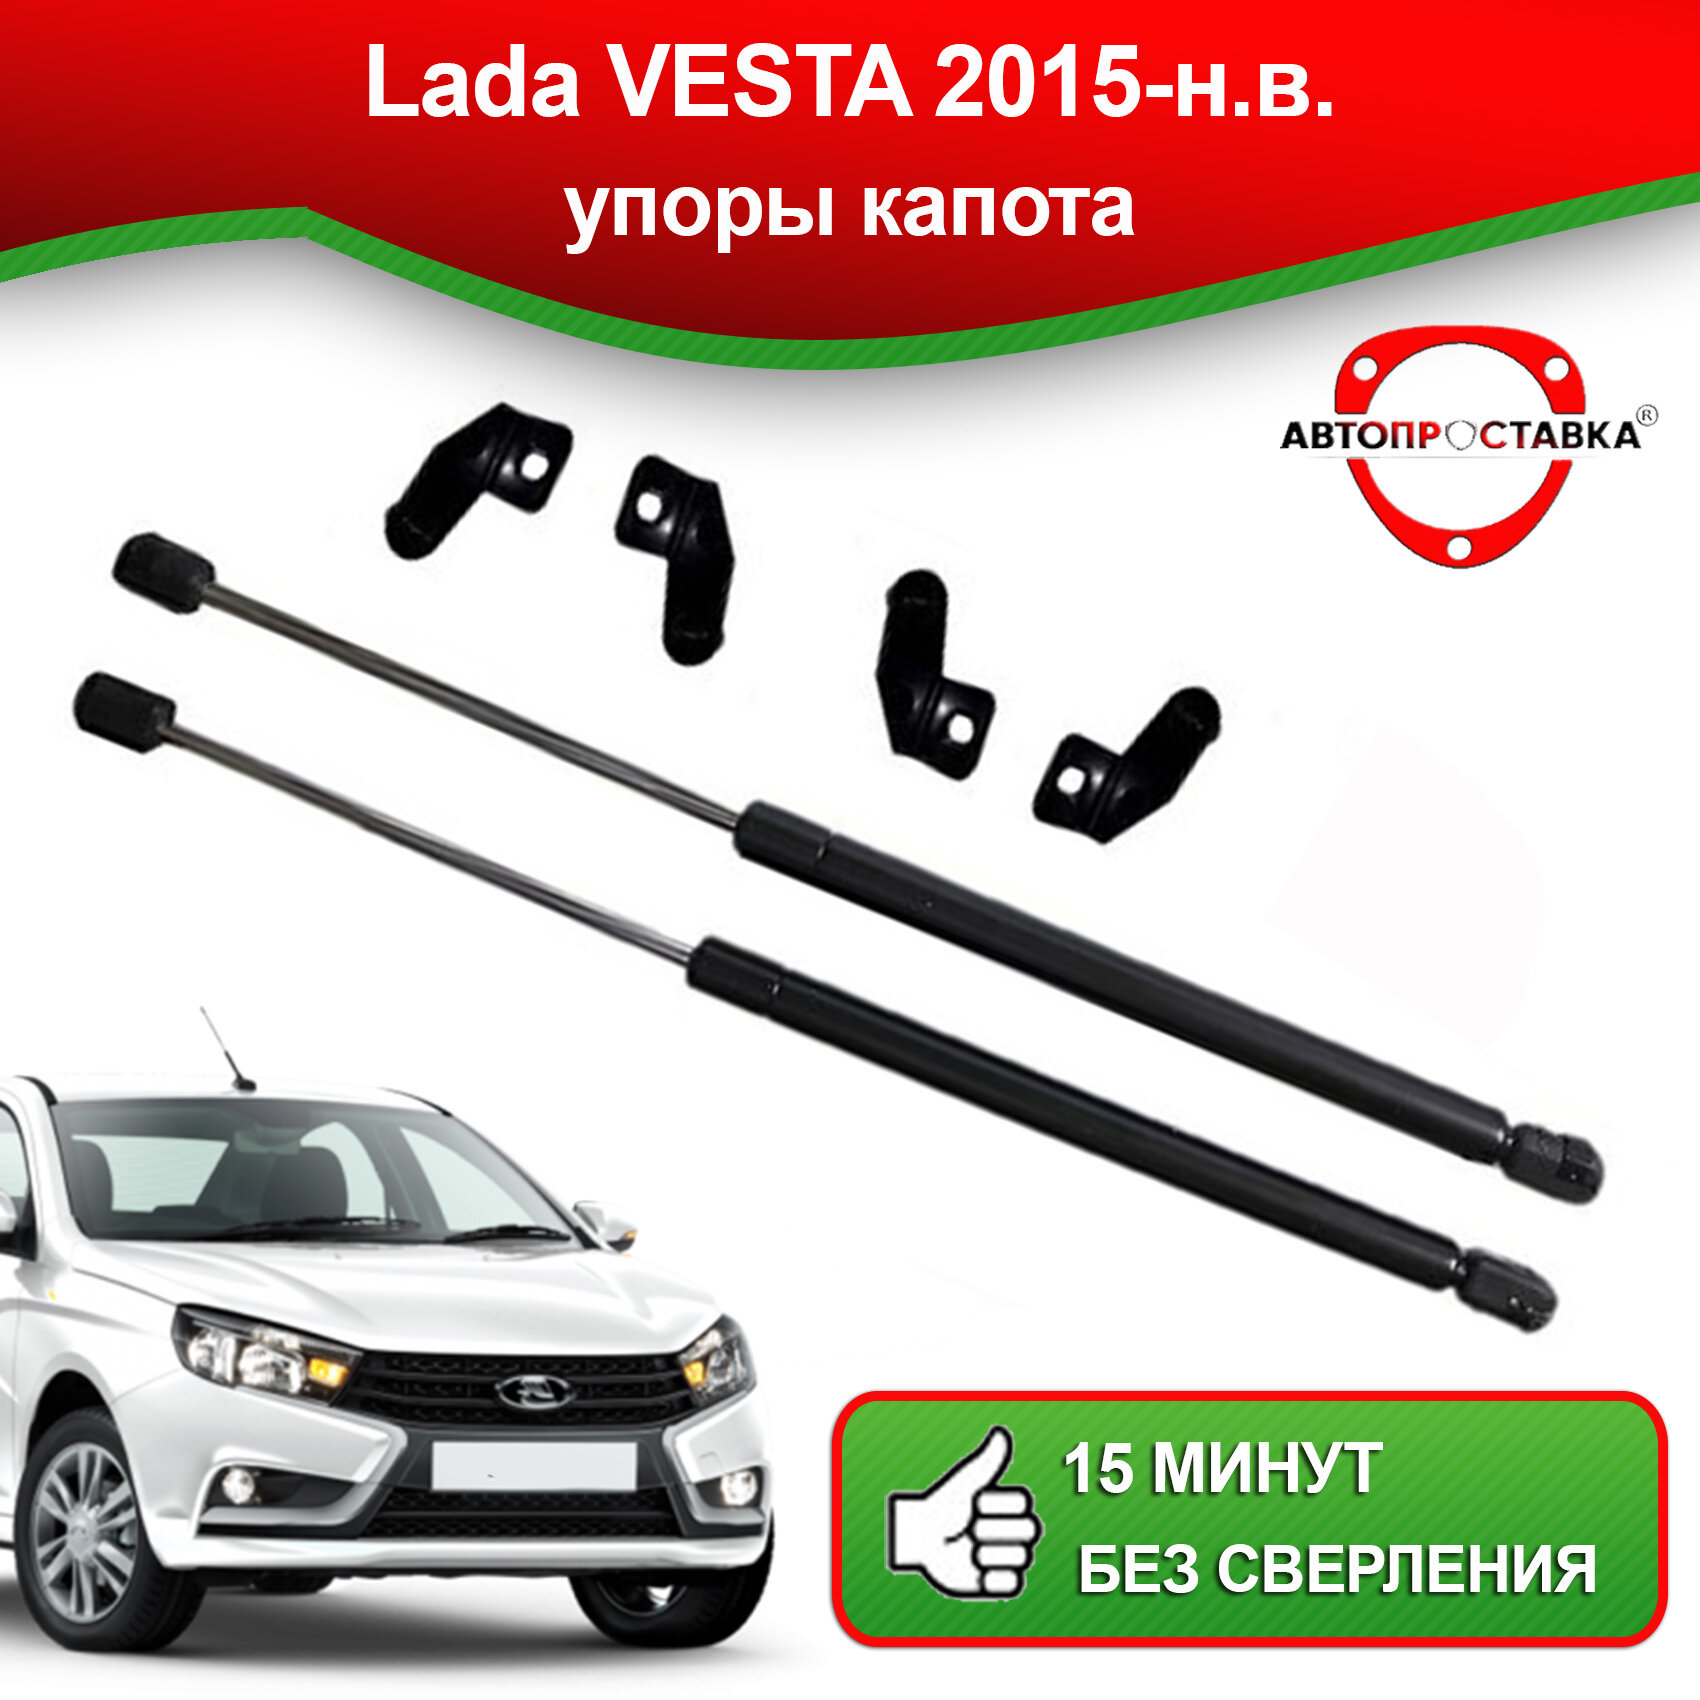 Упоры капота для Lada VESTA 2015-наст. время / Газовые амортизаторы капота Лада Веста